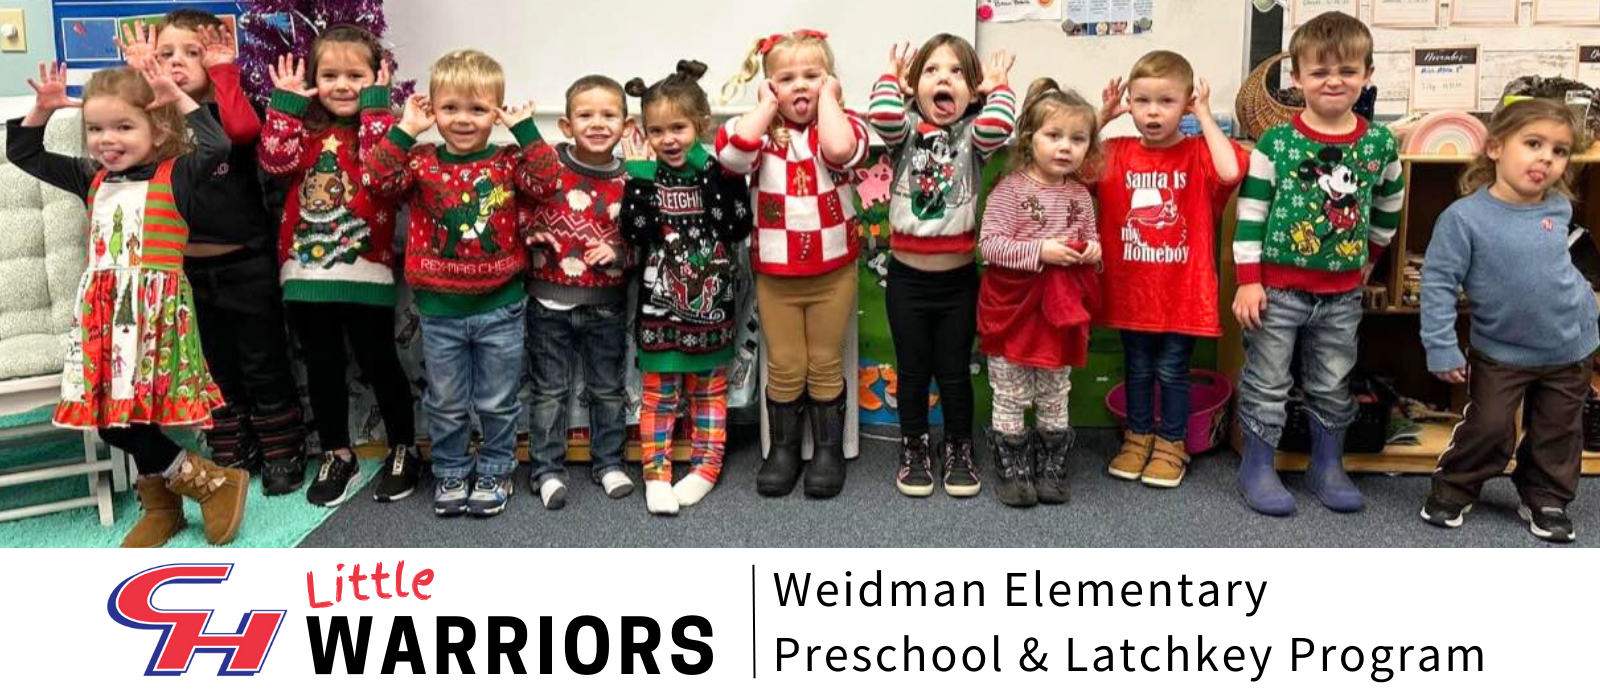 Weidman Elementary Little Warriors